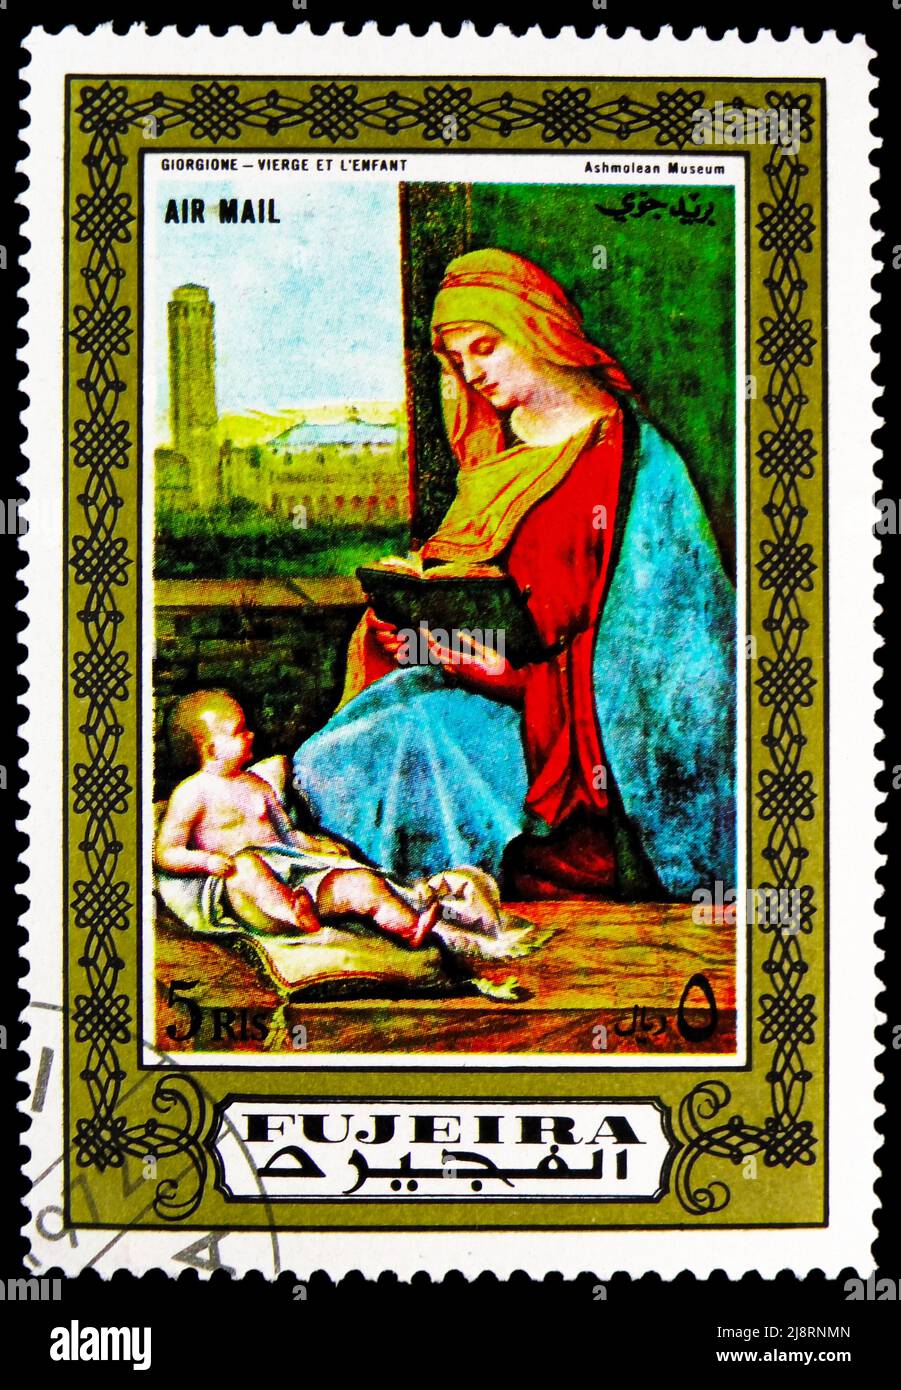 MOSKAU, RUSSLAND - 14. MAI 2022: Briefmarke gedruckt in Fujairah (Fujeira) zeigt Jungfrau und Kind, Madonna-Malereiserie, um 1972 Stockfoto